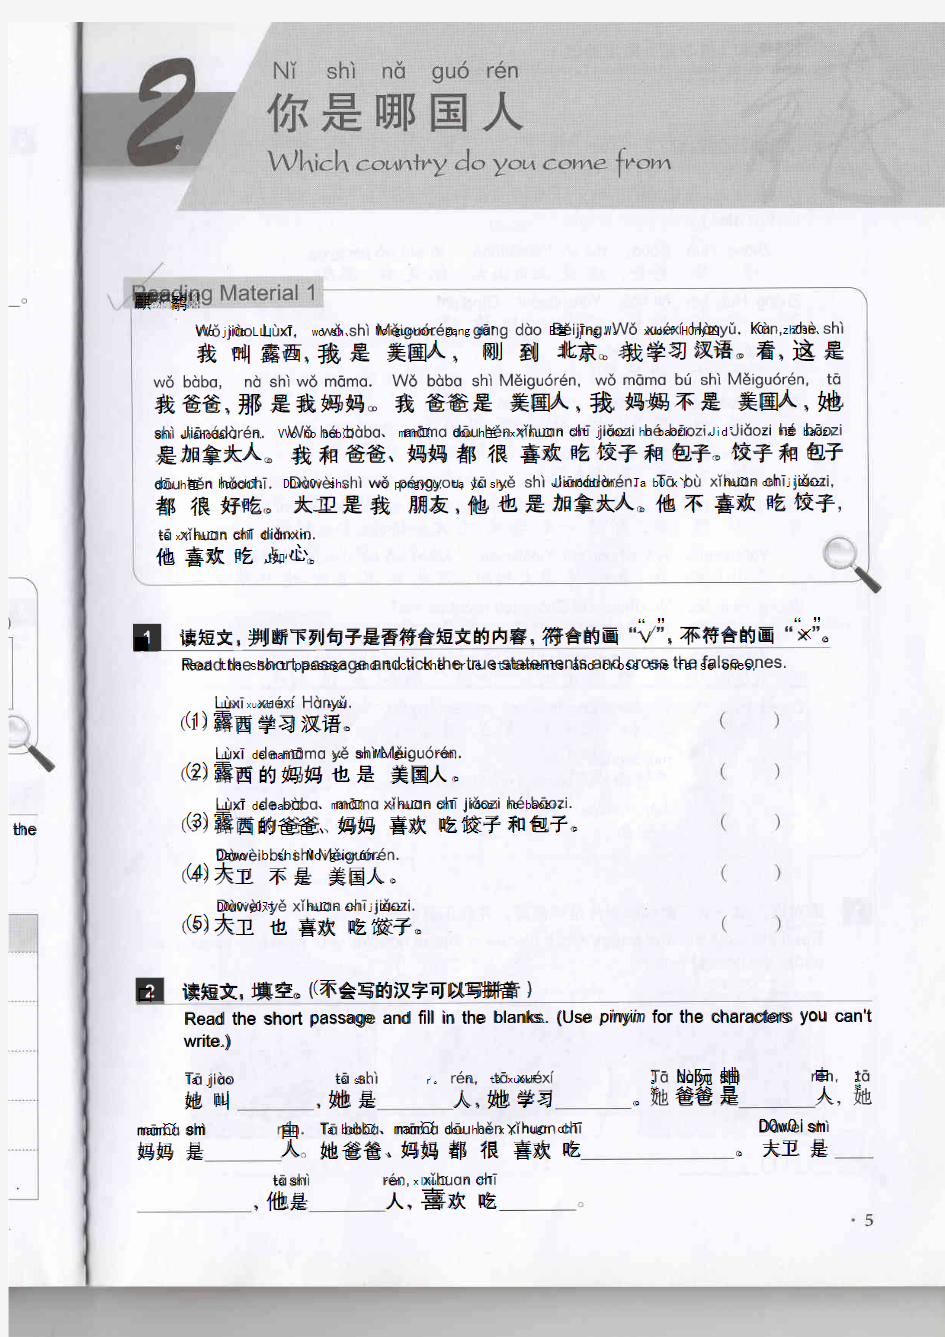 新实用汉语课本第3版第1册同步阅读第2课